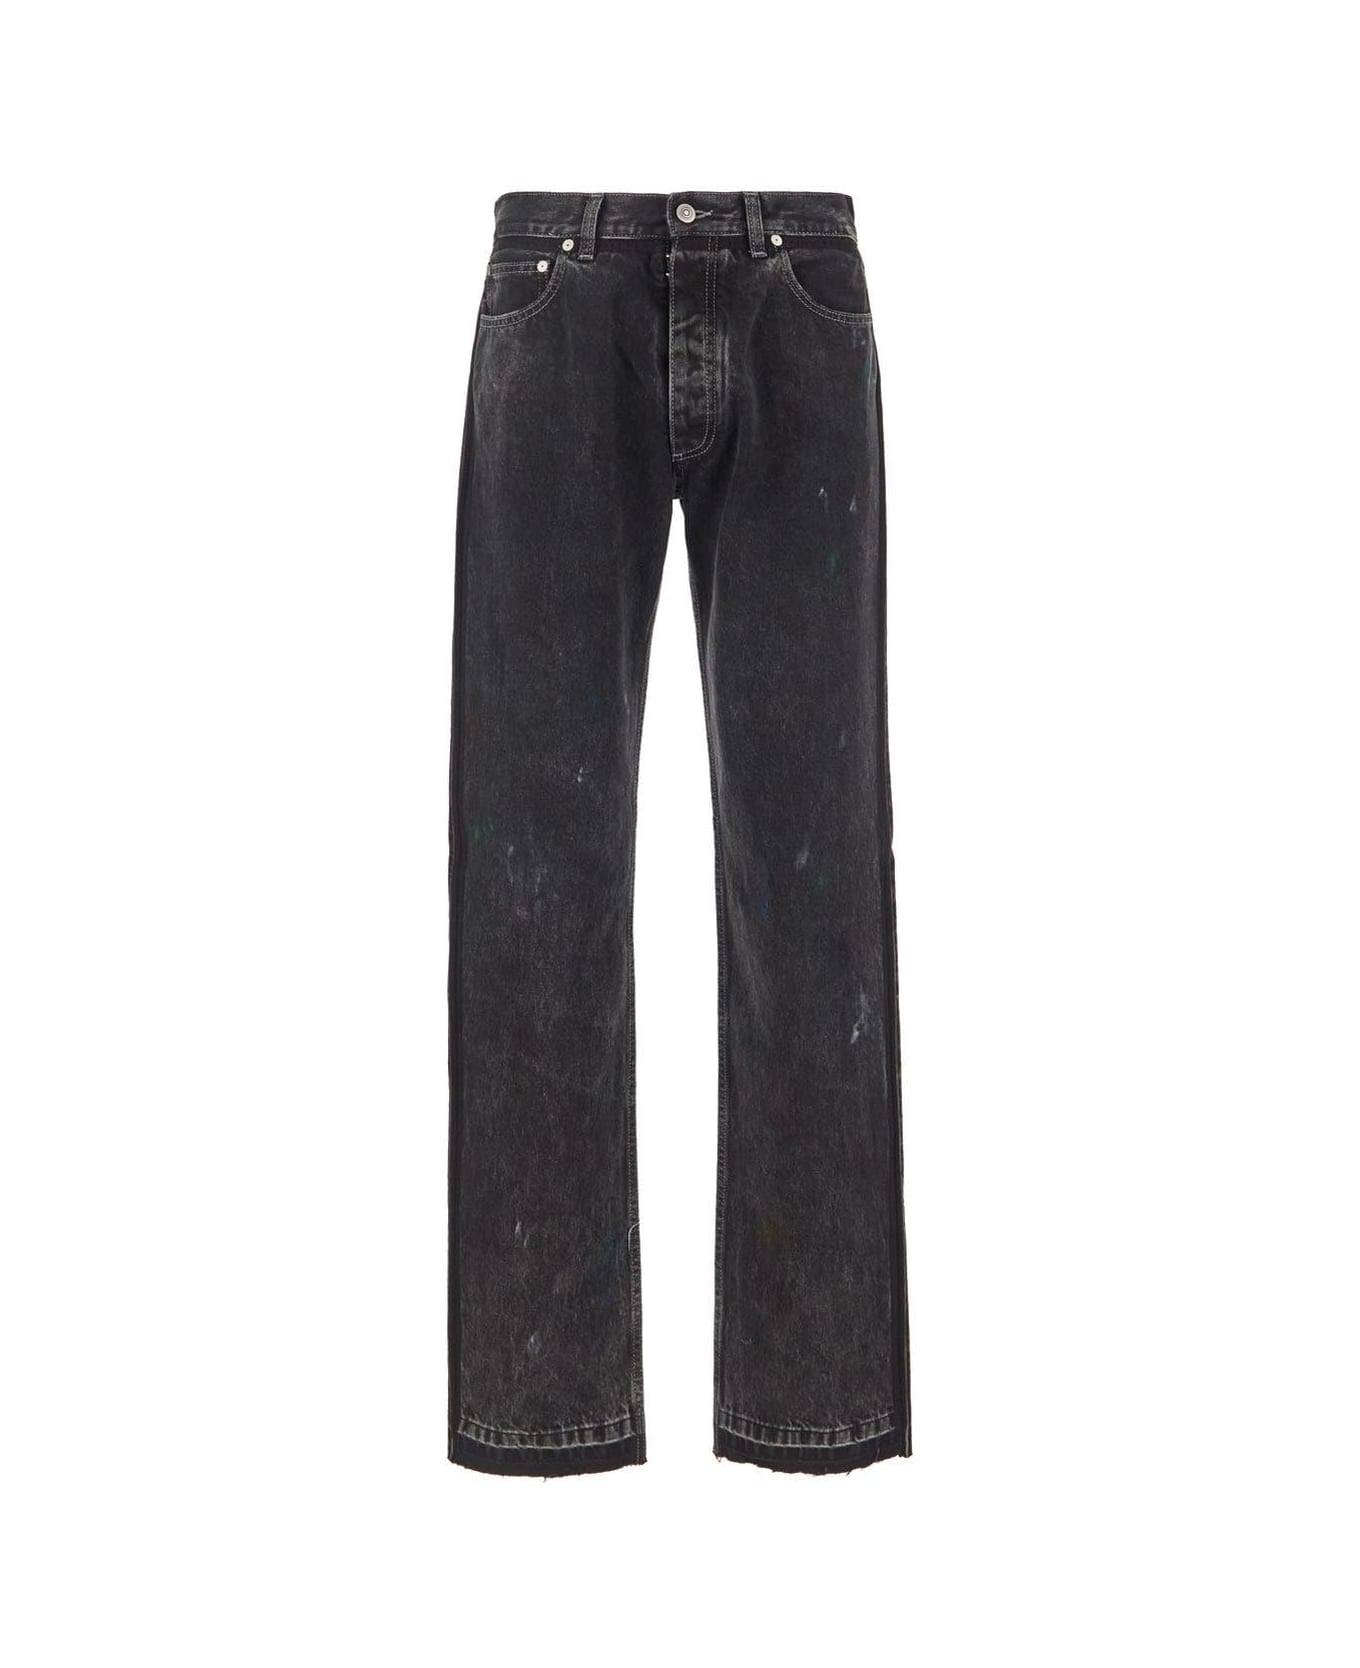 Maison Margiela Black Paint Drip Jeans - Washed black